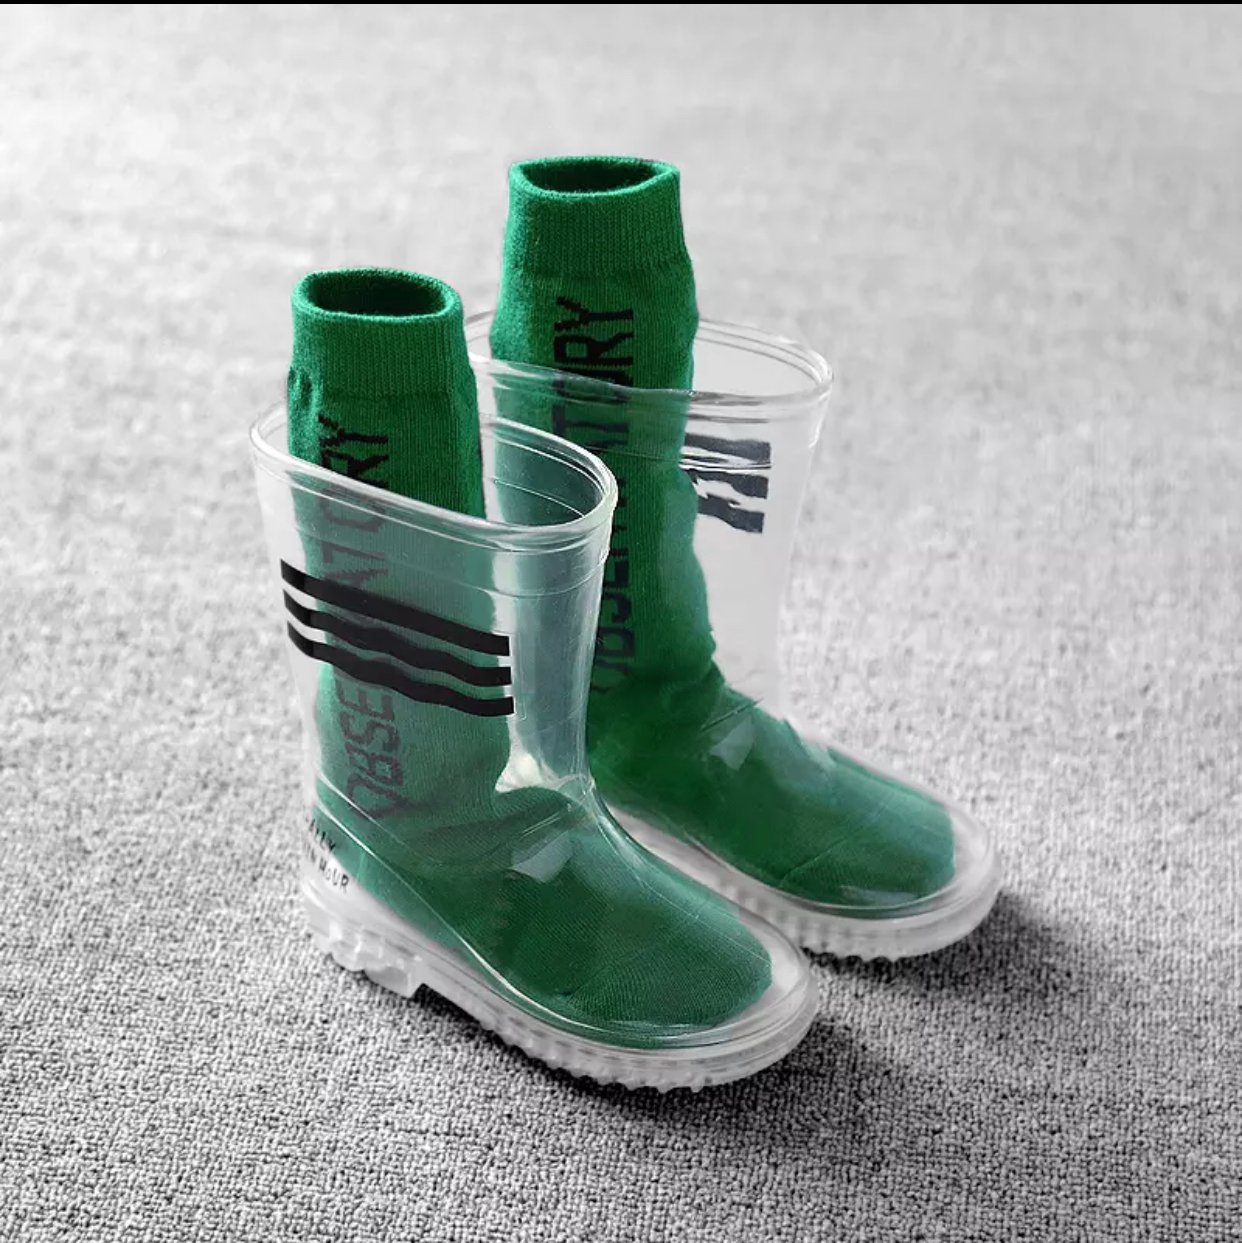 clear rain boots